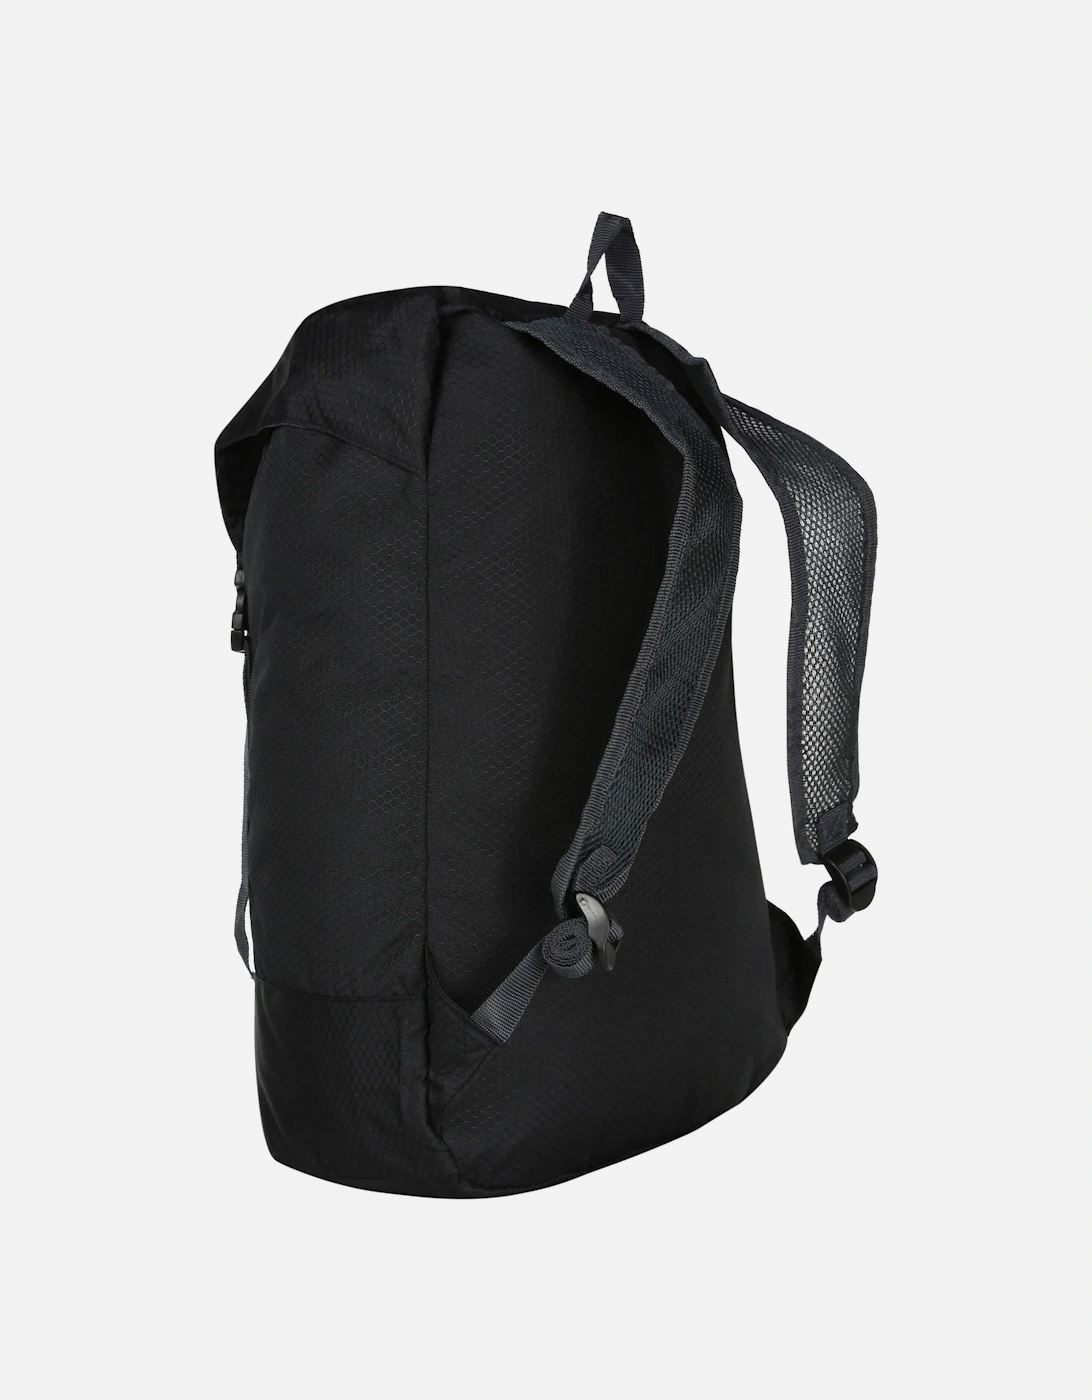 Great Outdoors Easypack Packaway Rucksack/Backpack (25 Litres)